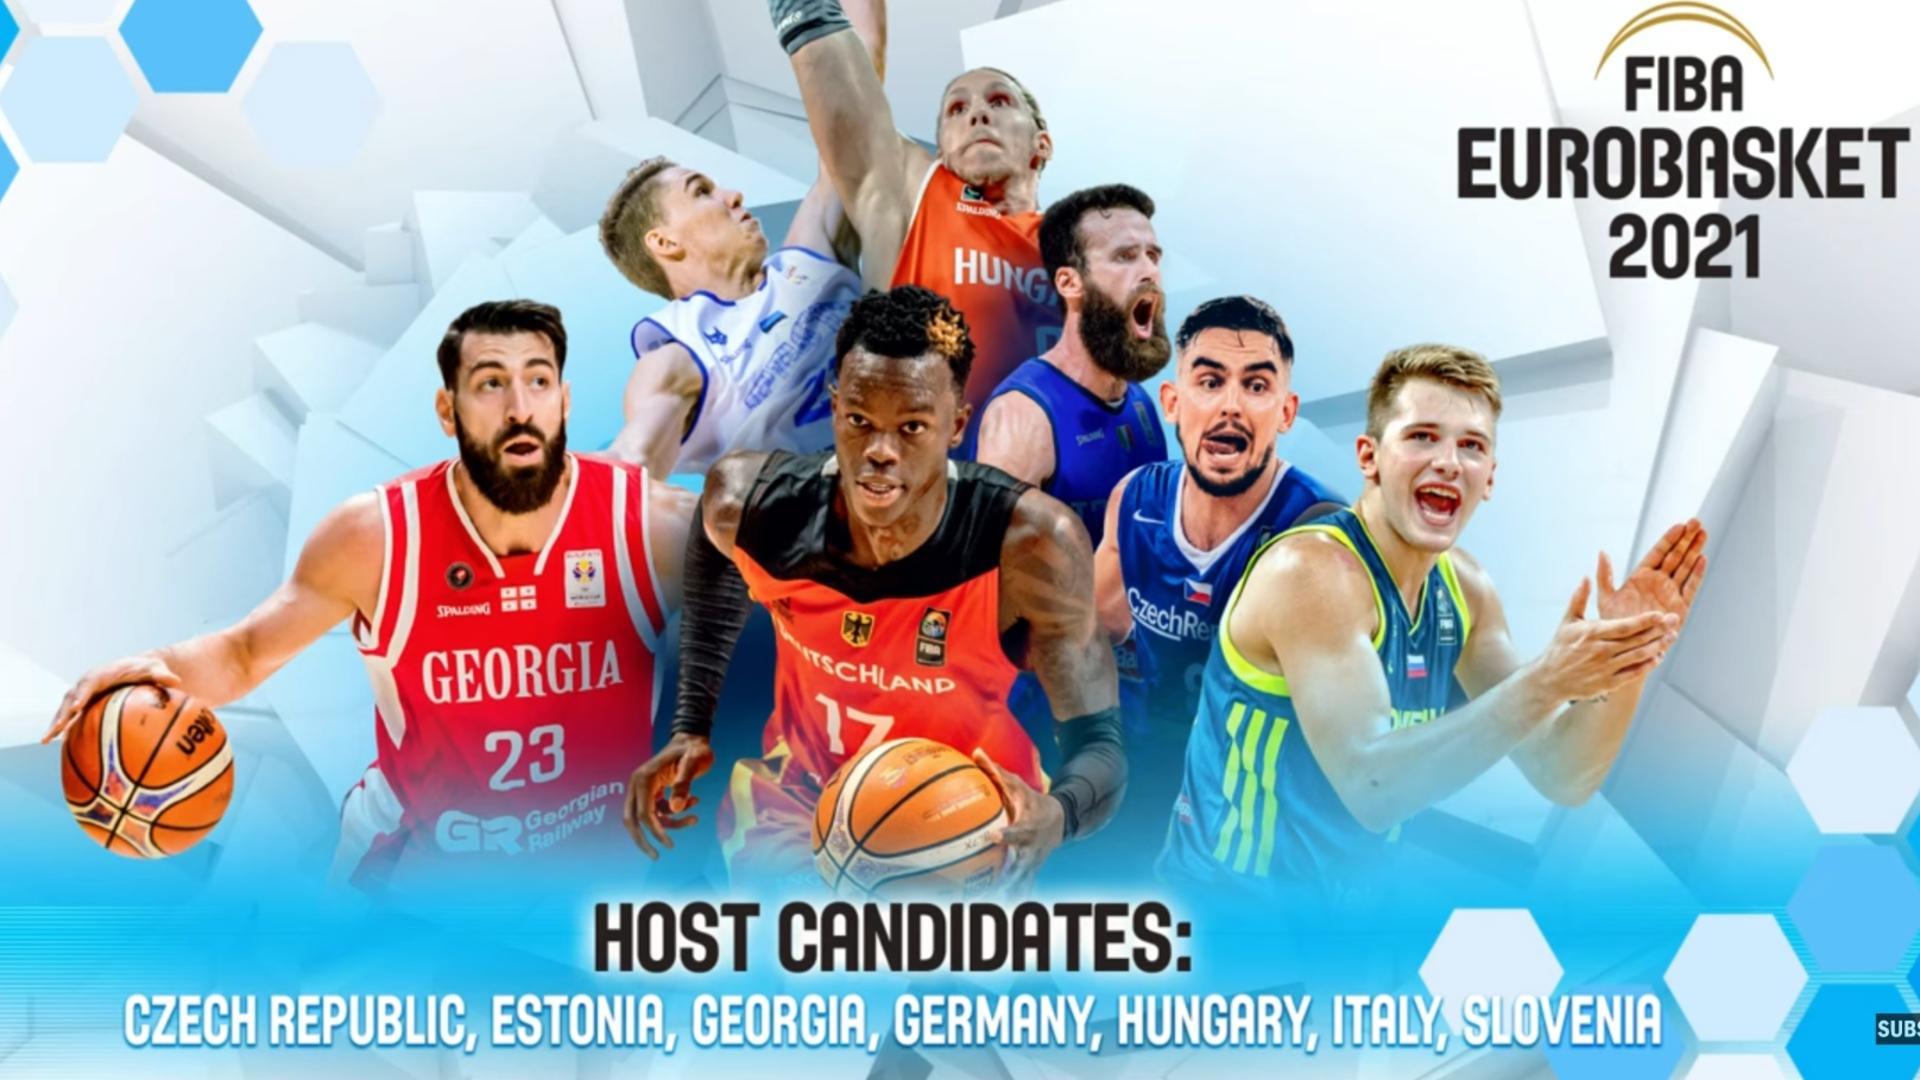 EuroBasket 2021